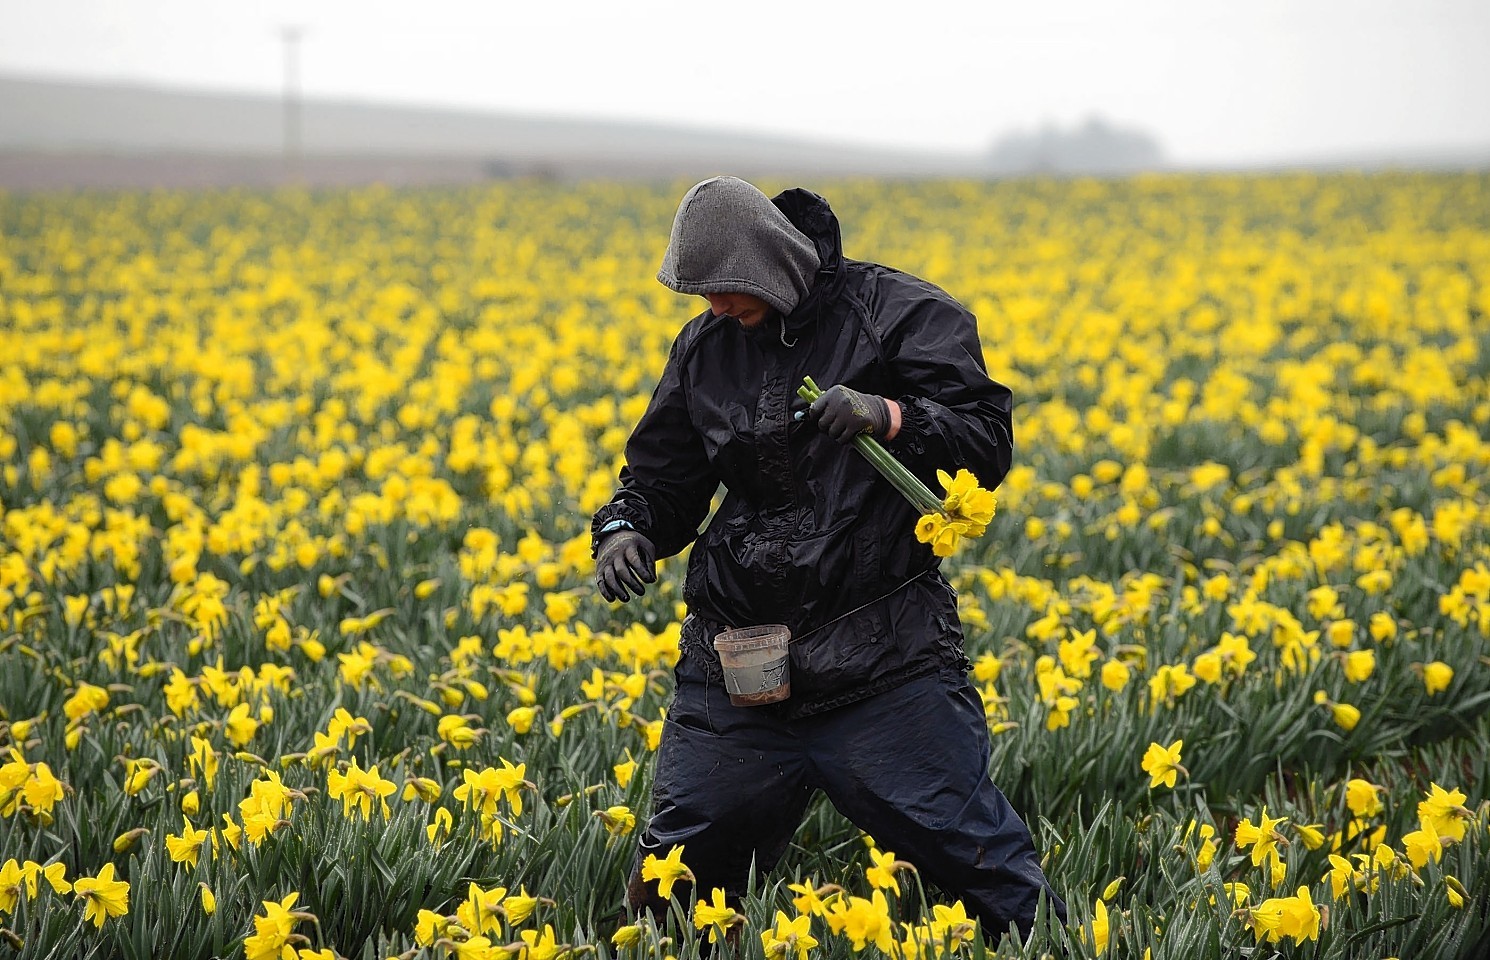 Daffodil fields in Aberdeenshire